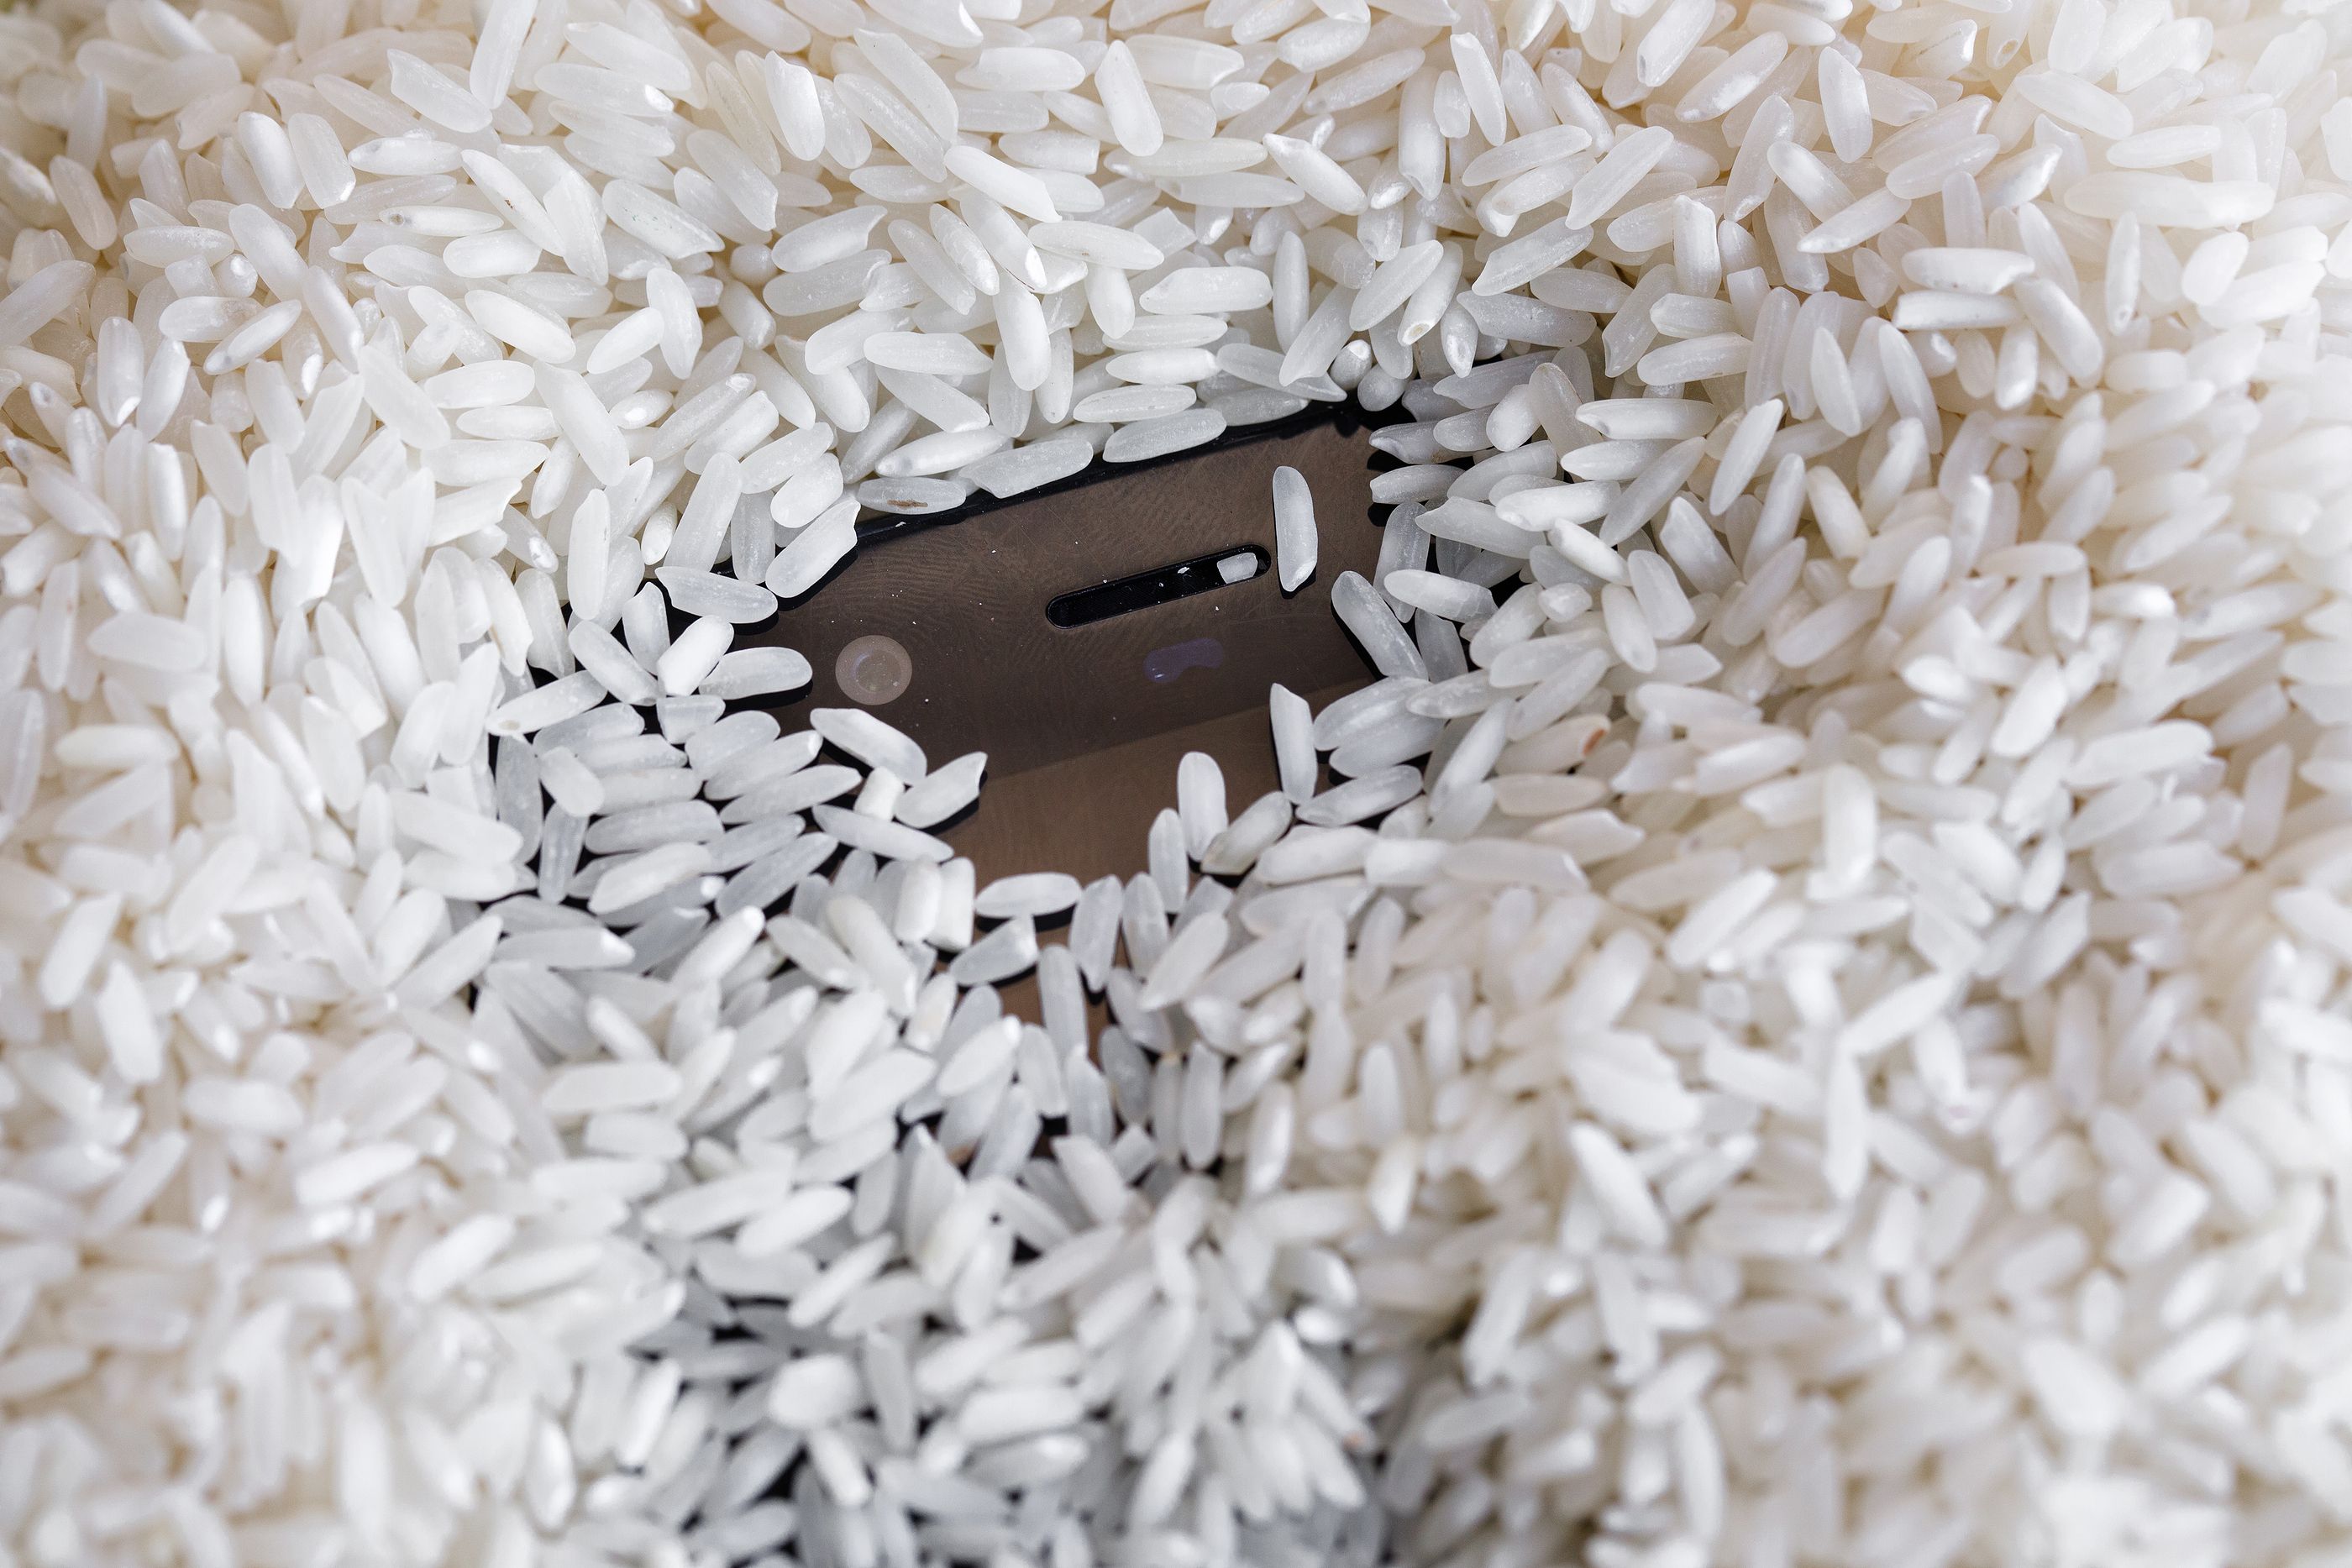 "Sumergir el móvil en arroz puede salvarlo" y otros 9 mitos sobre los smartphones